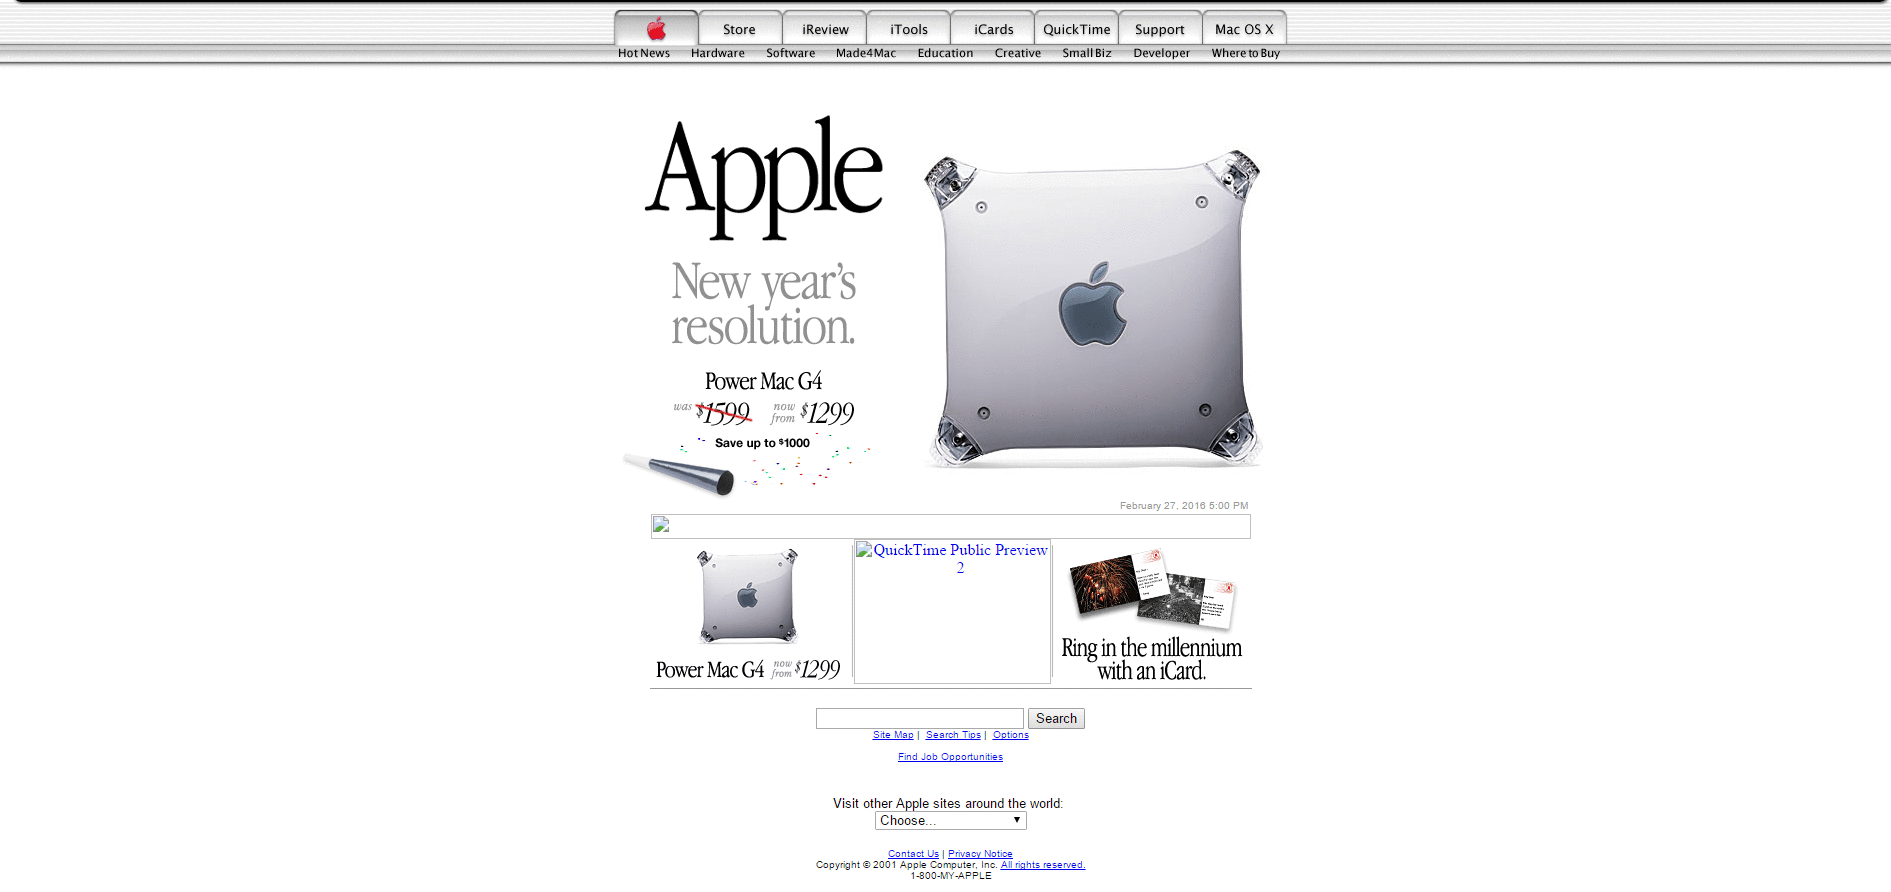 Website Design for apple.com in 2001